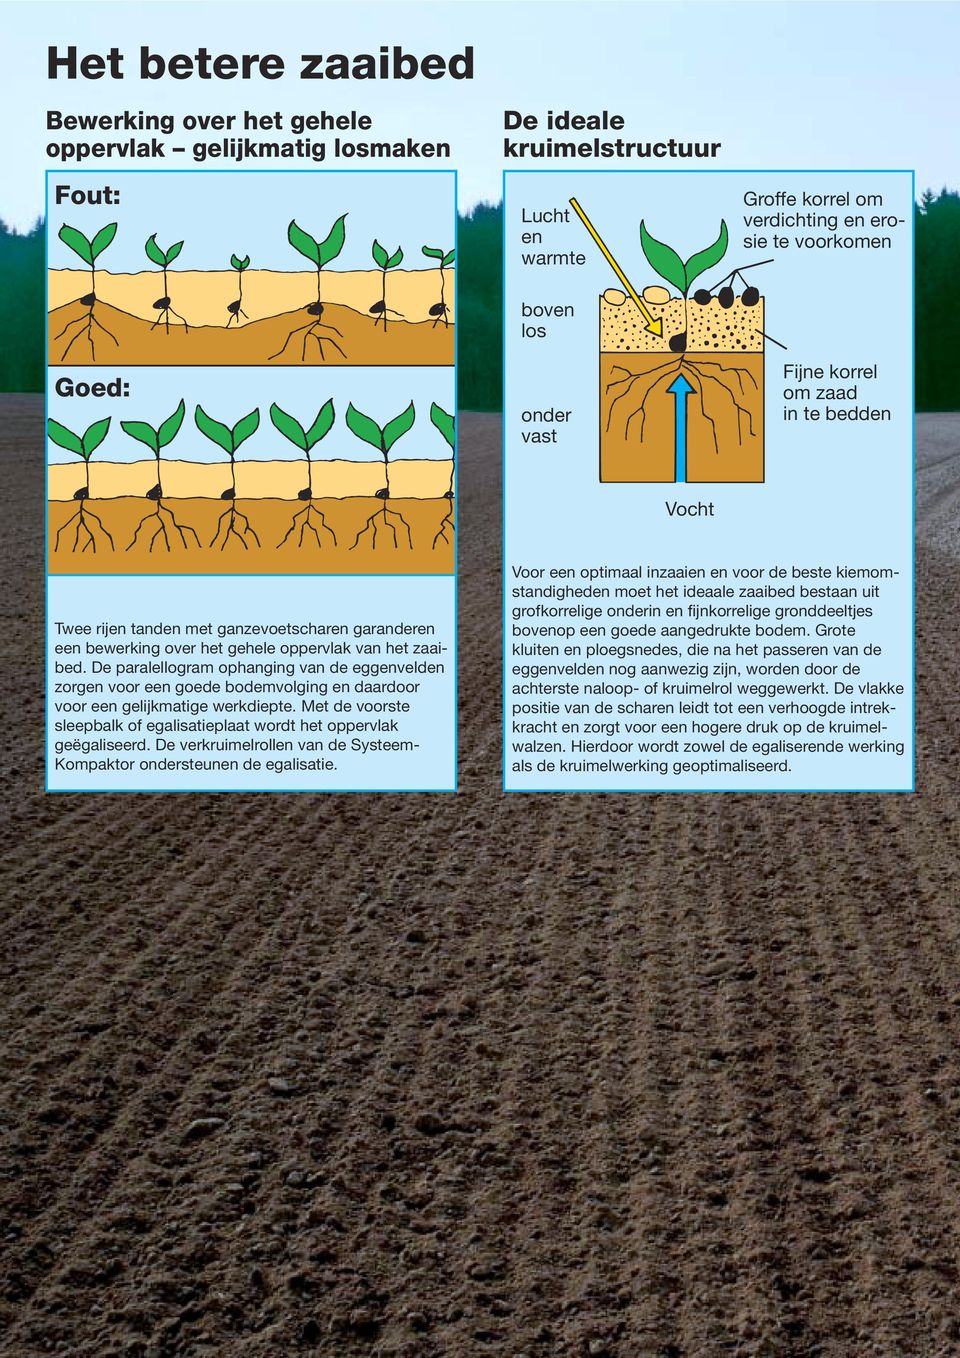 De paralellogram ophanging van de eggenvelden zorgen voor een goede bodemvolging en daardoor voor een gelijkmatige werkdiepte.